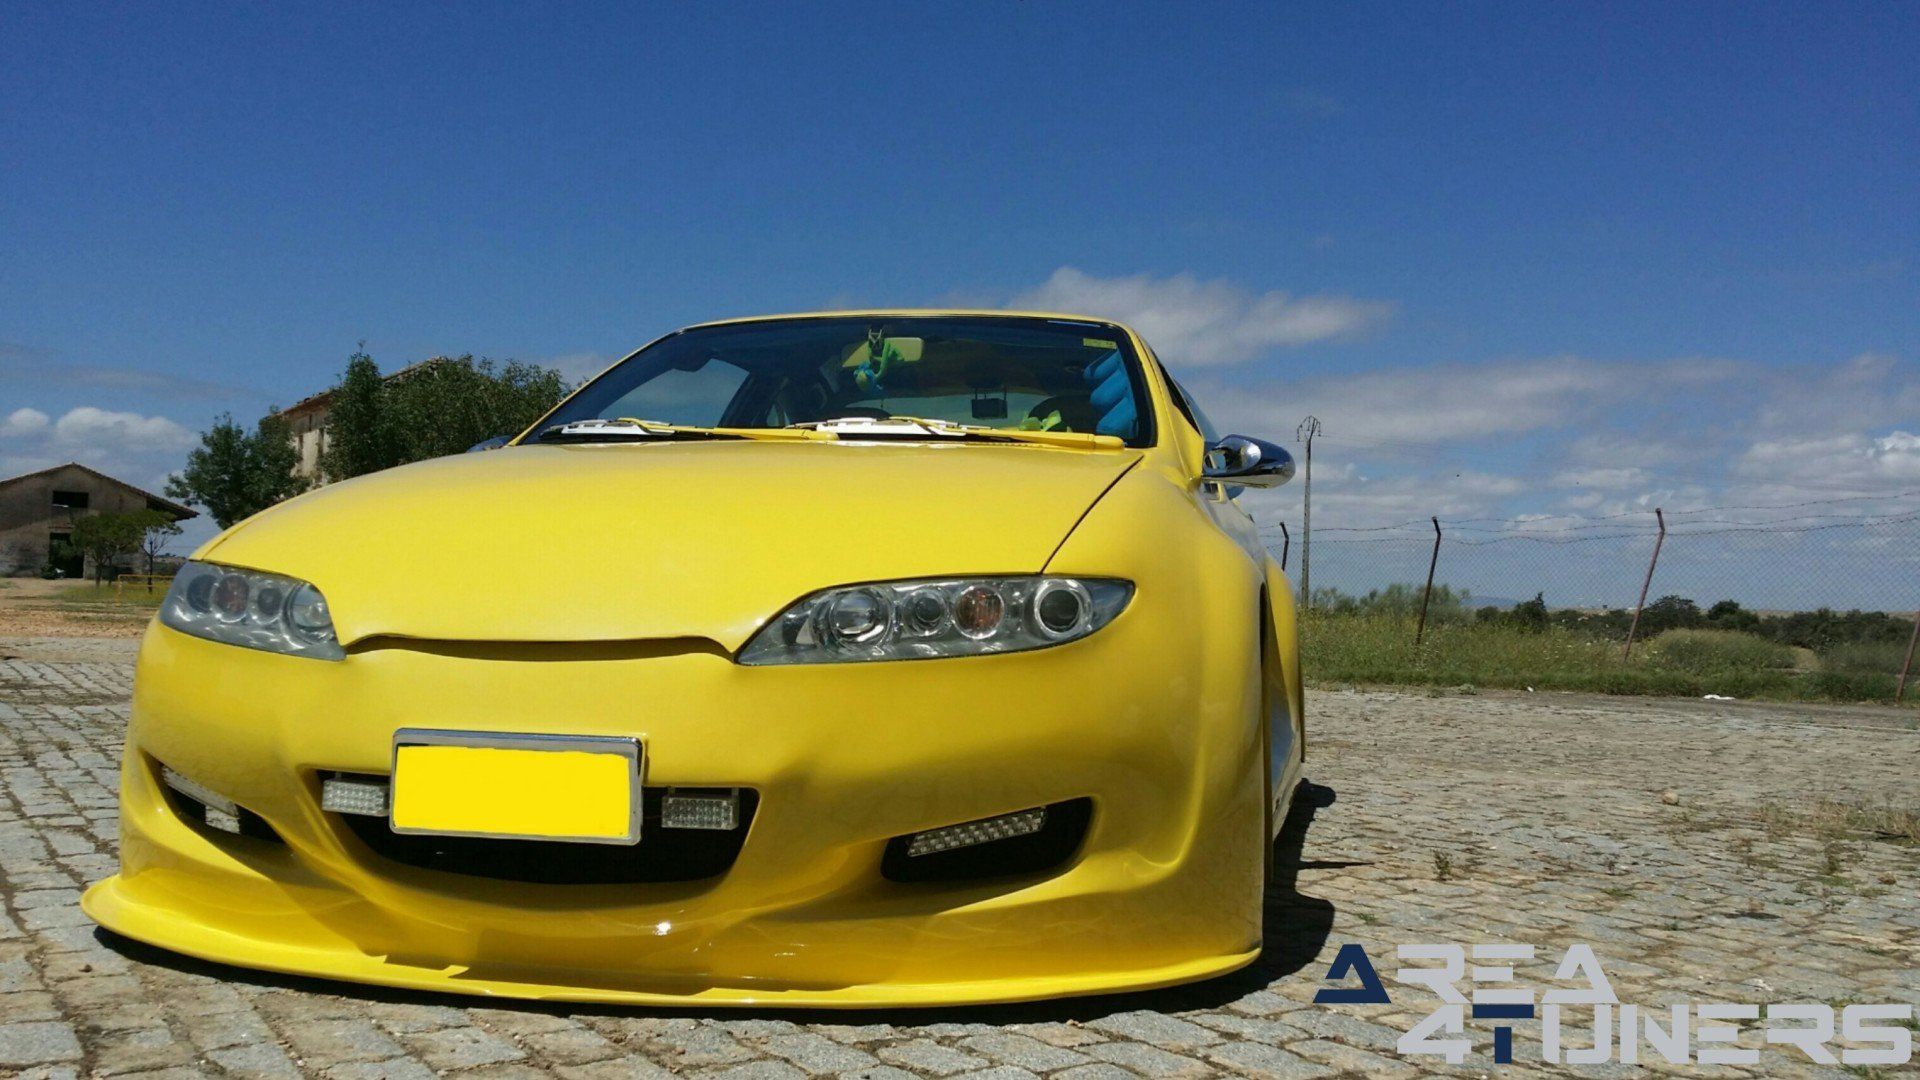 Imagen del reportaje sobre coche Tuning, en la revista líder Area4tuners.es sobre un Renault Megane